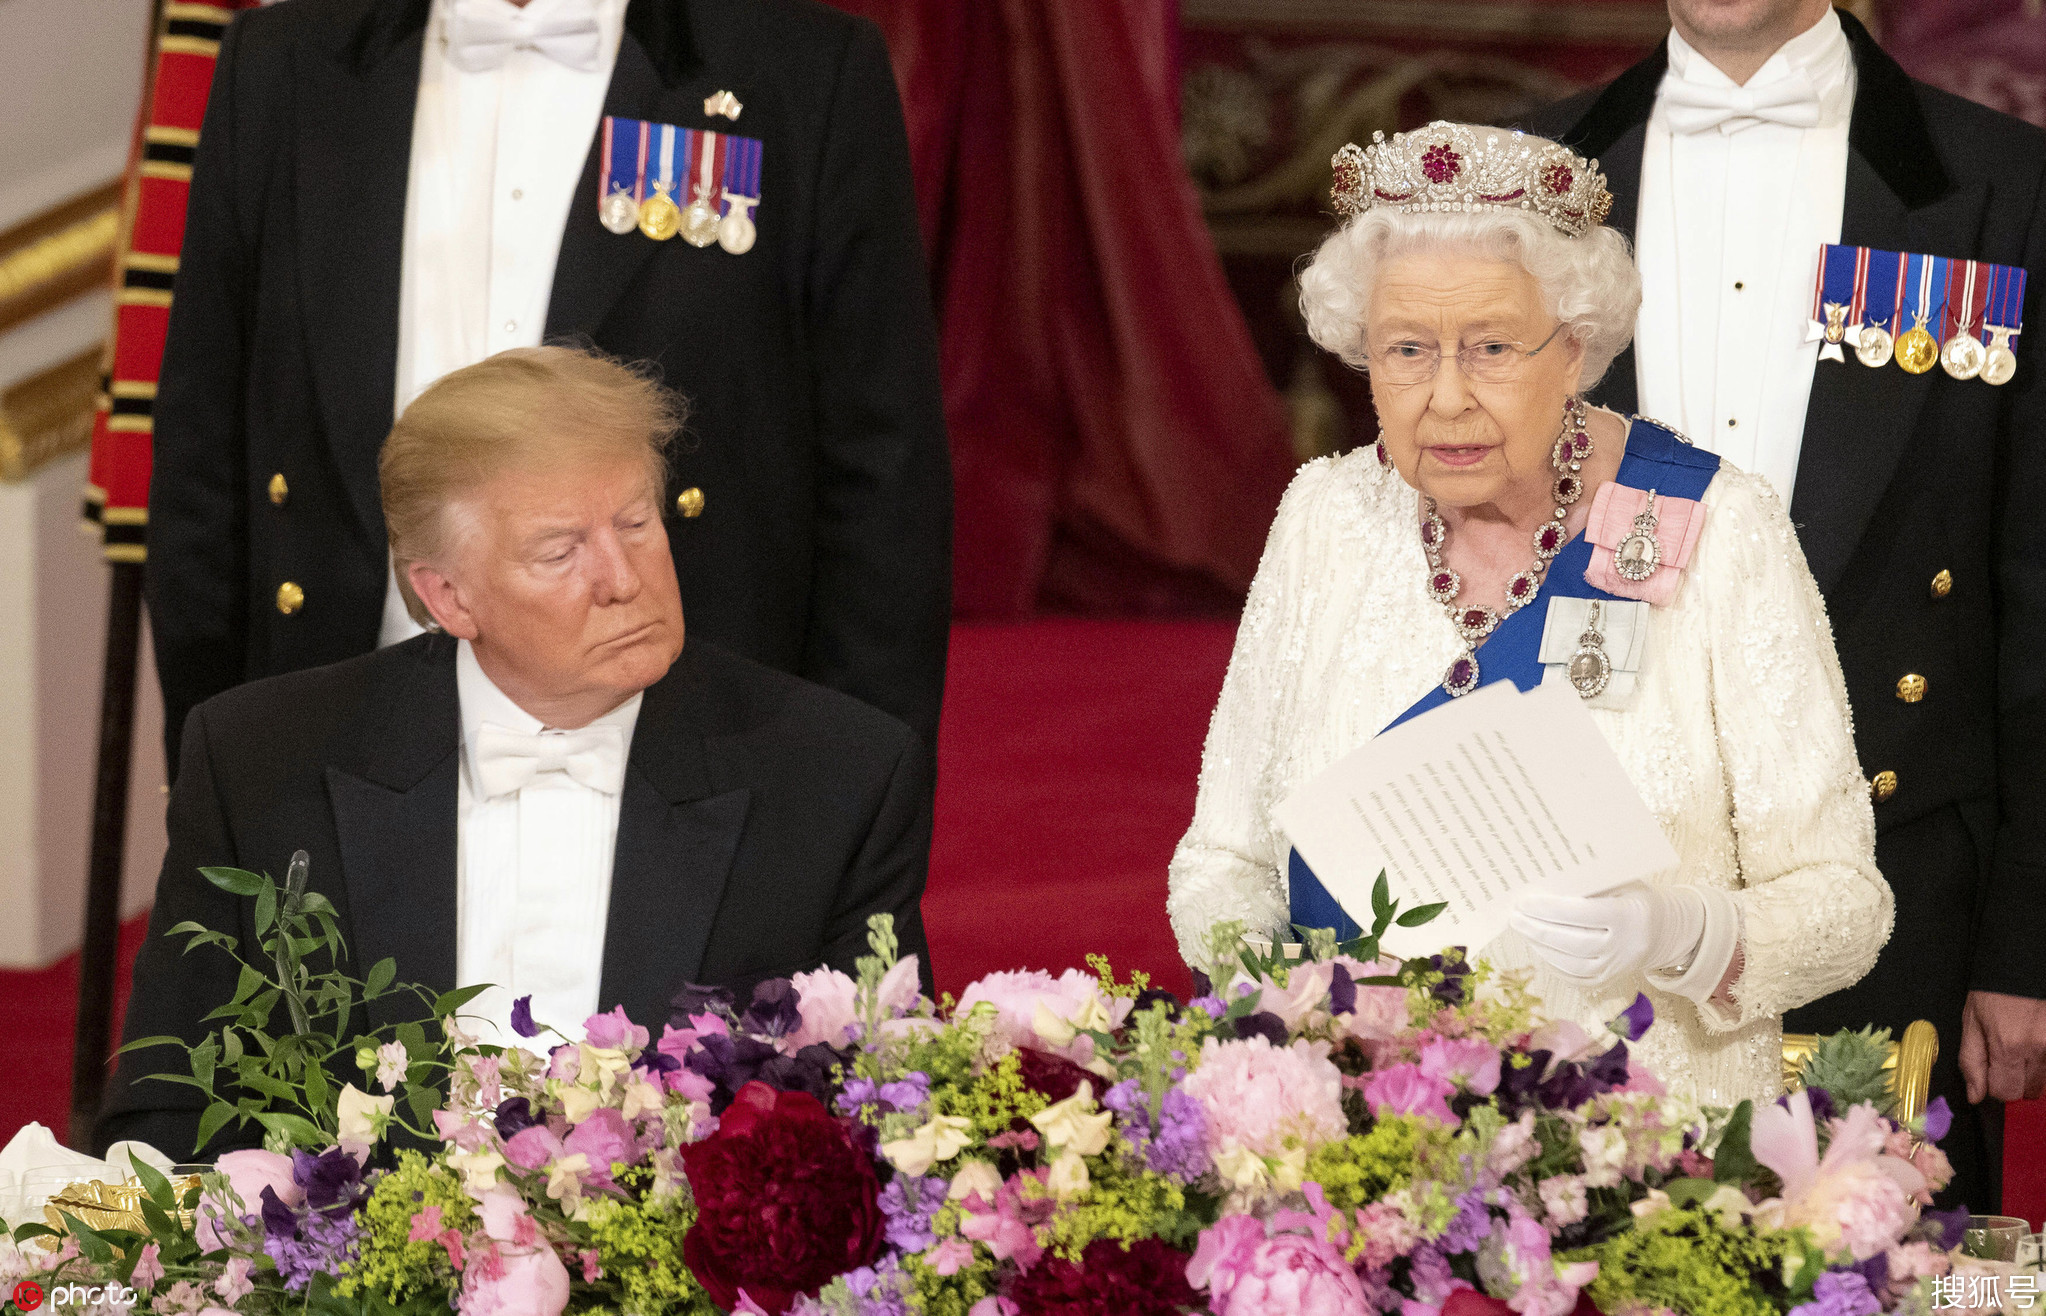 违反皇家礼仪?特朗普在国宴上疑似触碰英女王后背